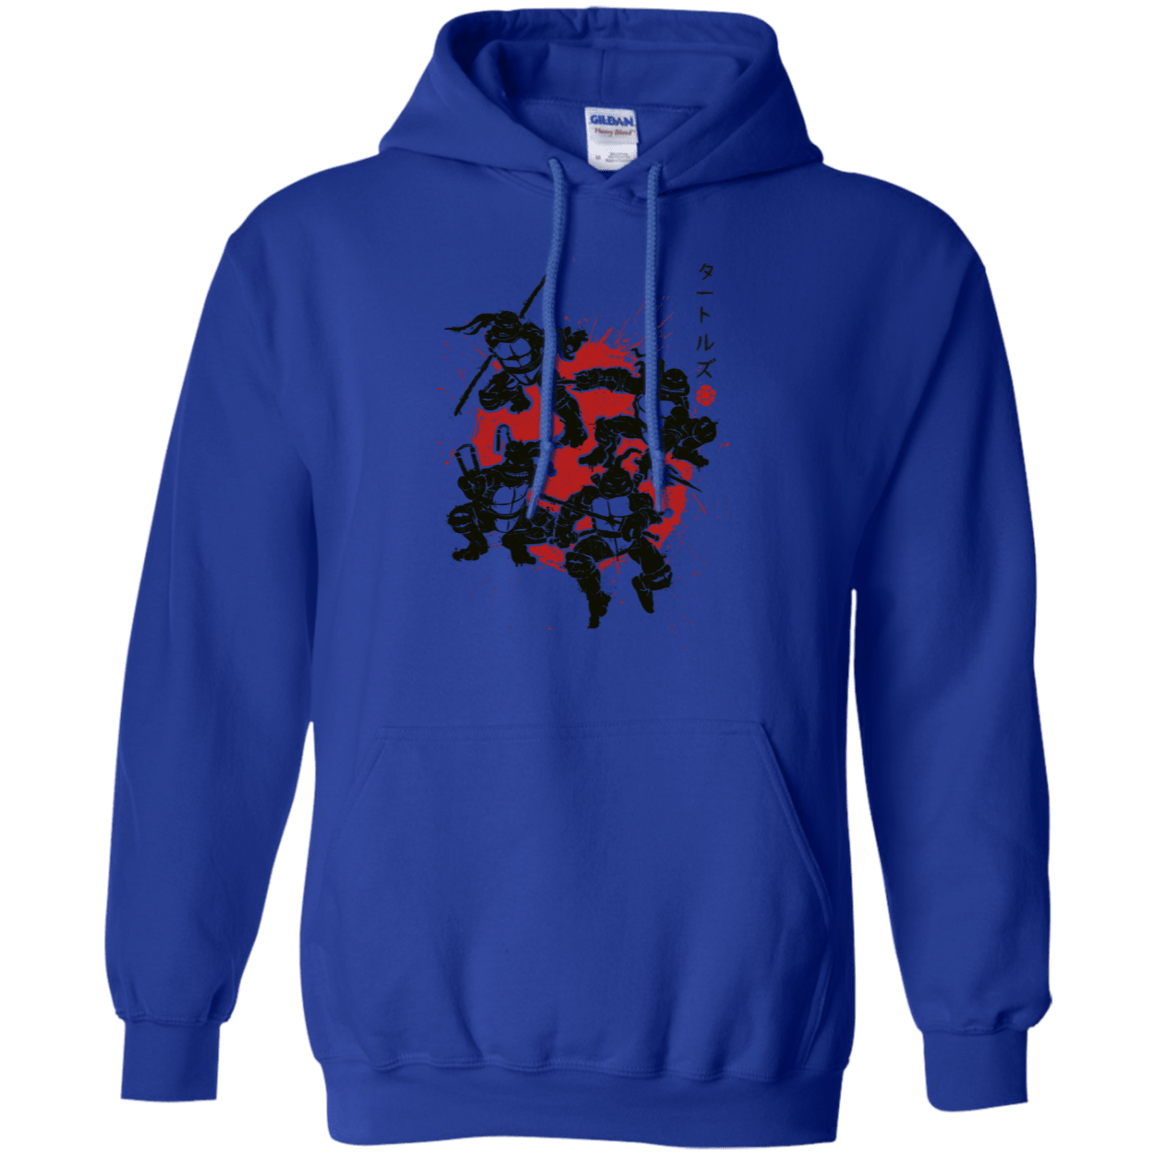 Sweatshirts Royal / S TMNT - Mutant Warriors Pullover Hoodie